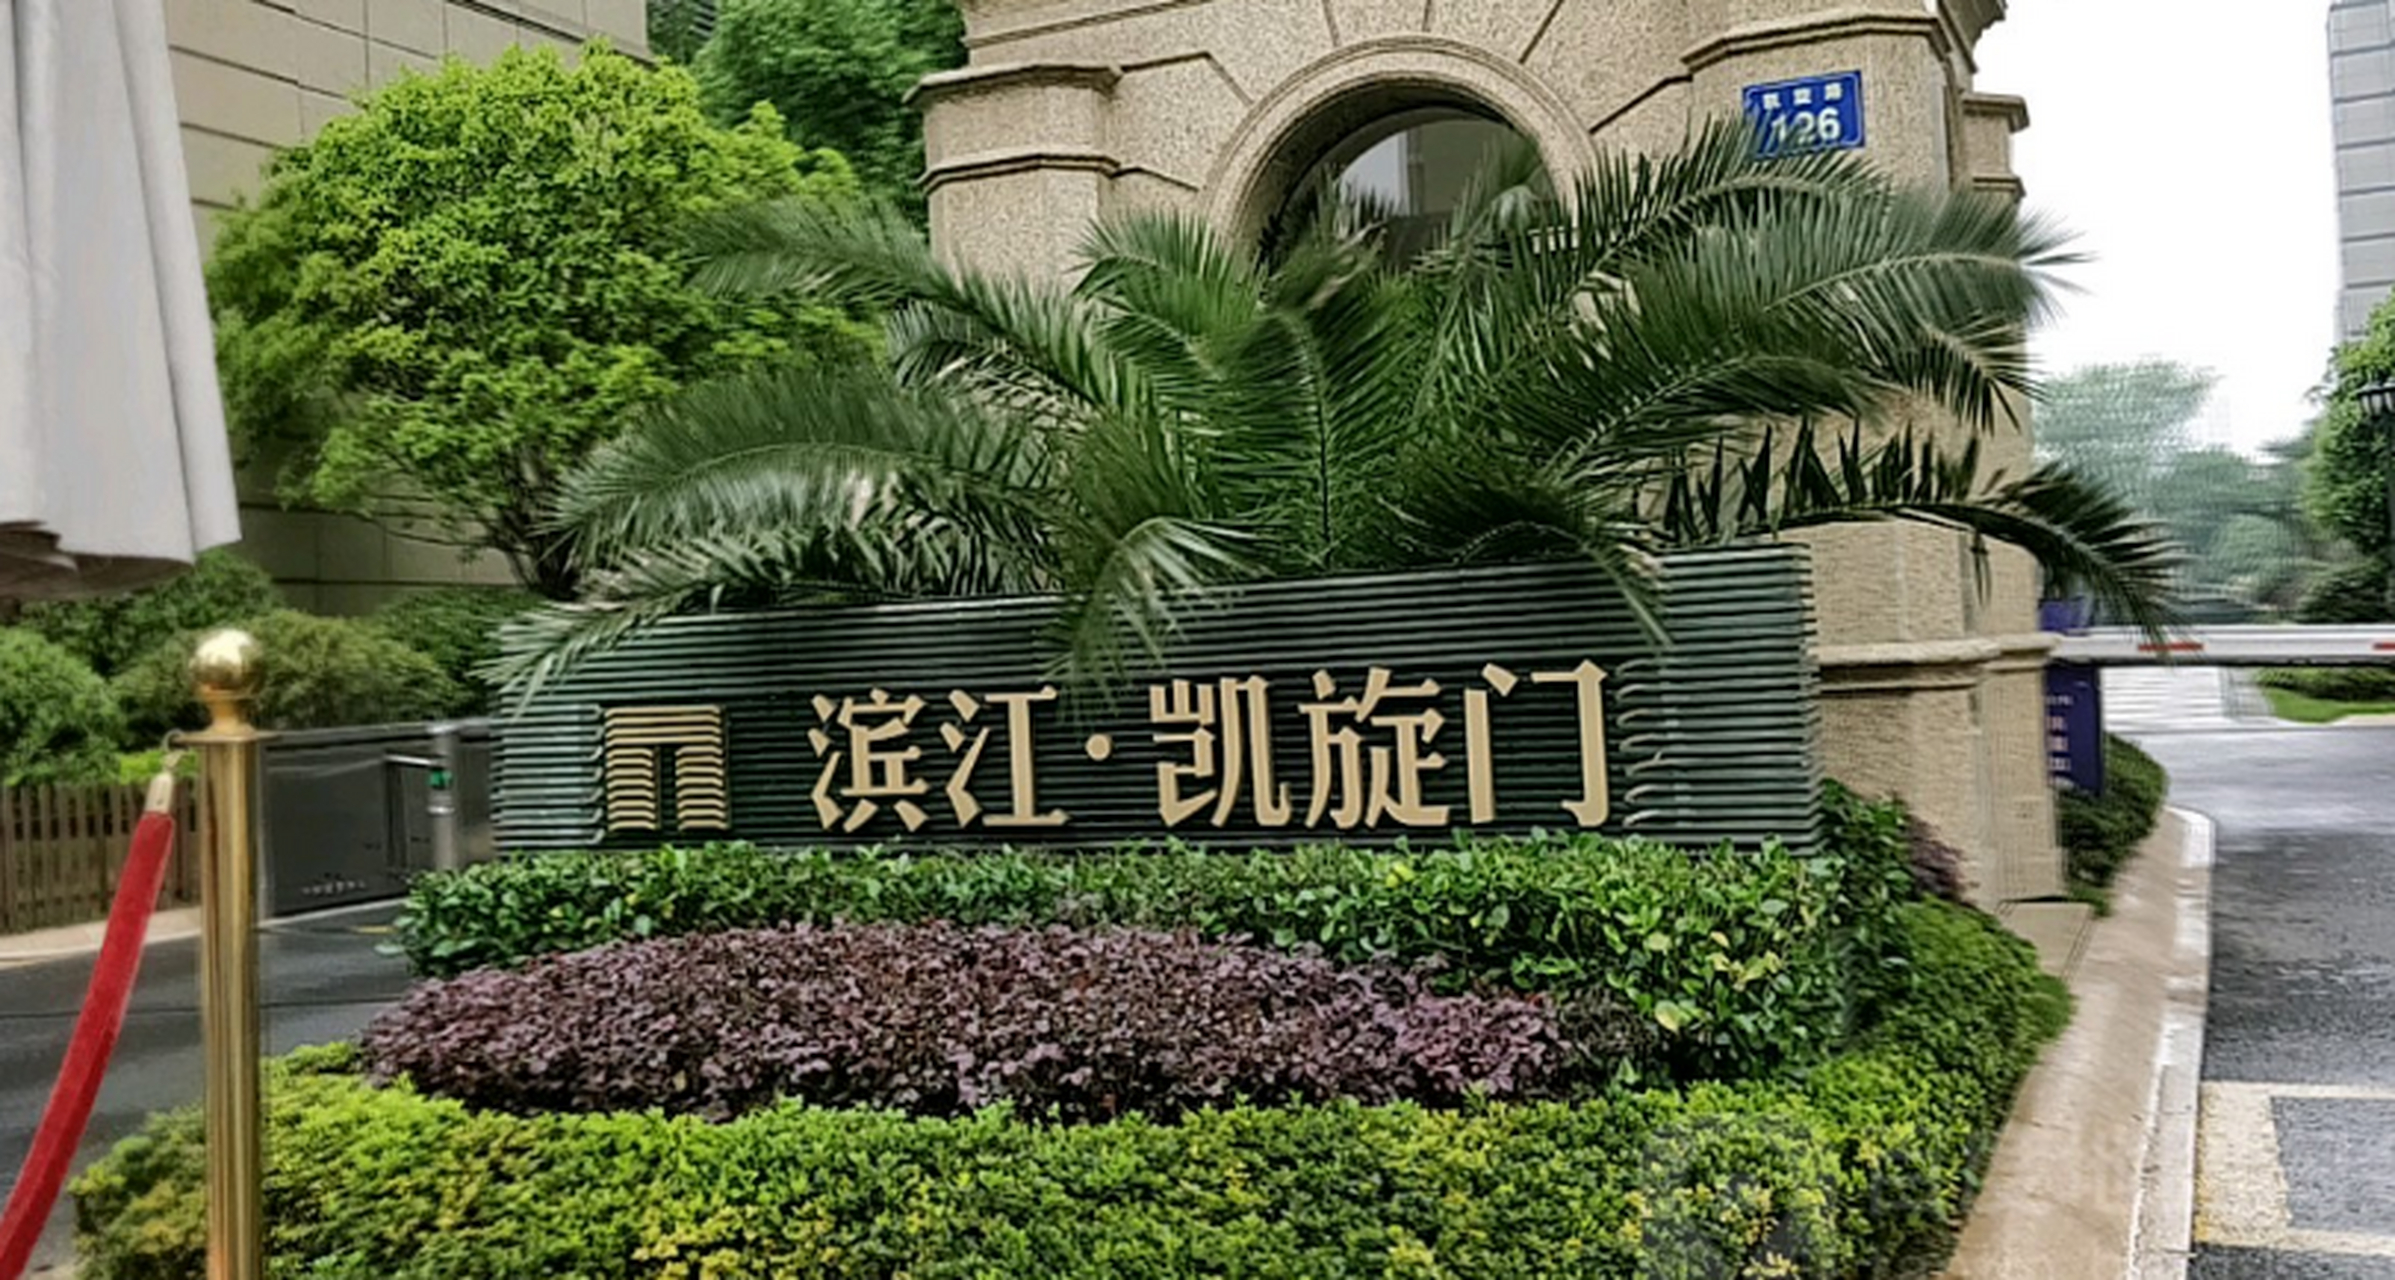 上海滨江凯旋门图片图片